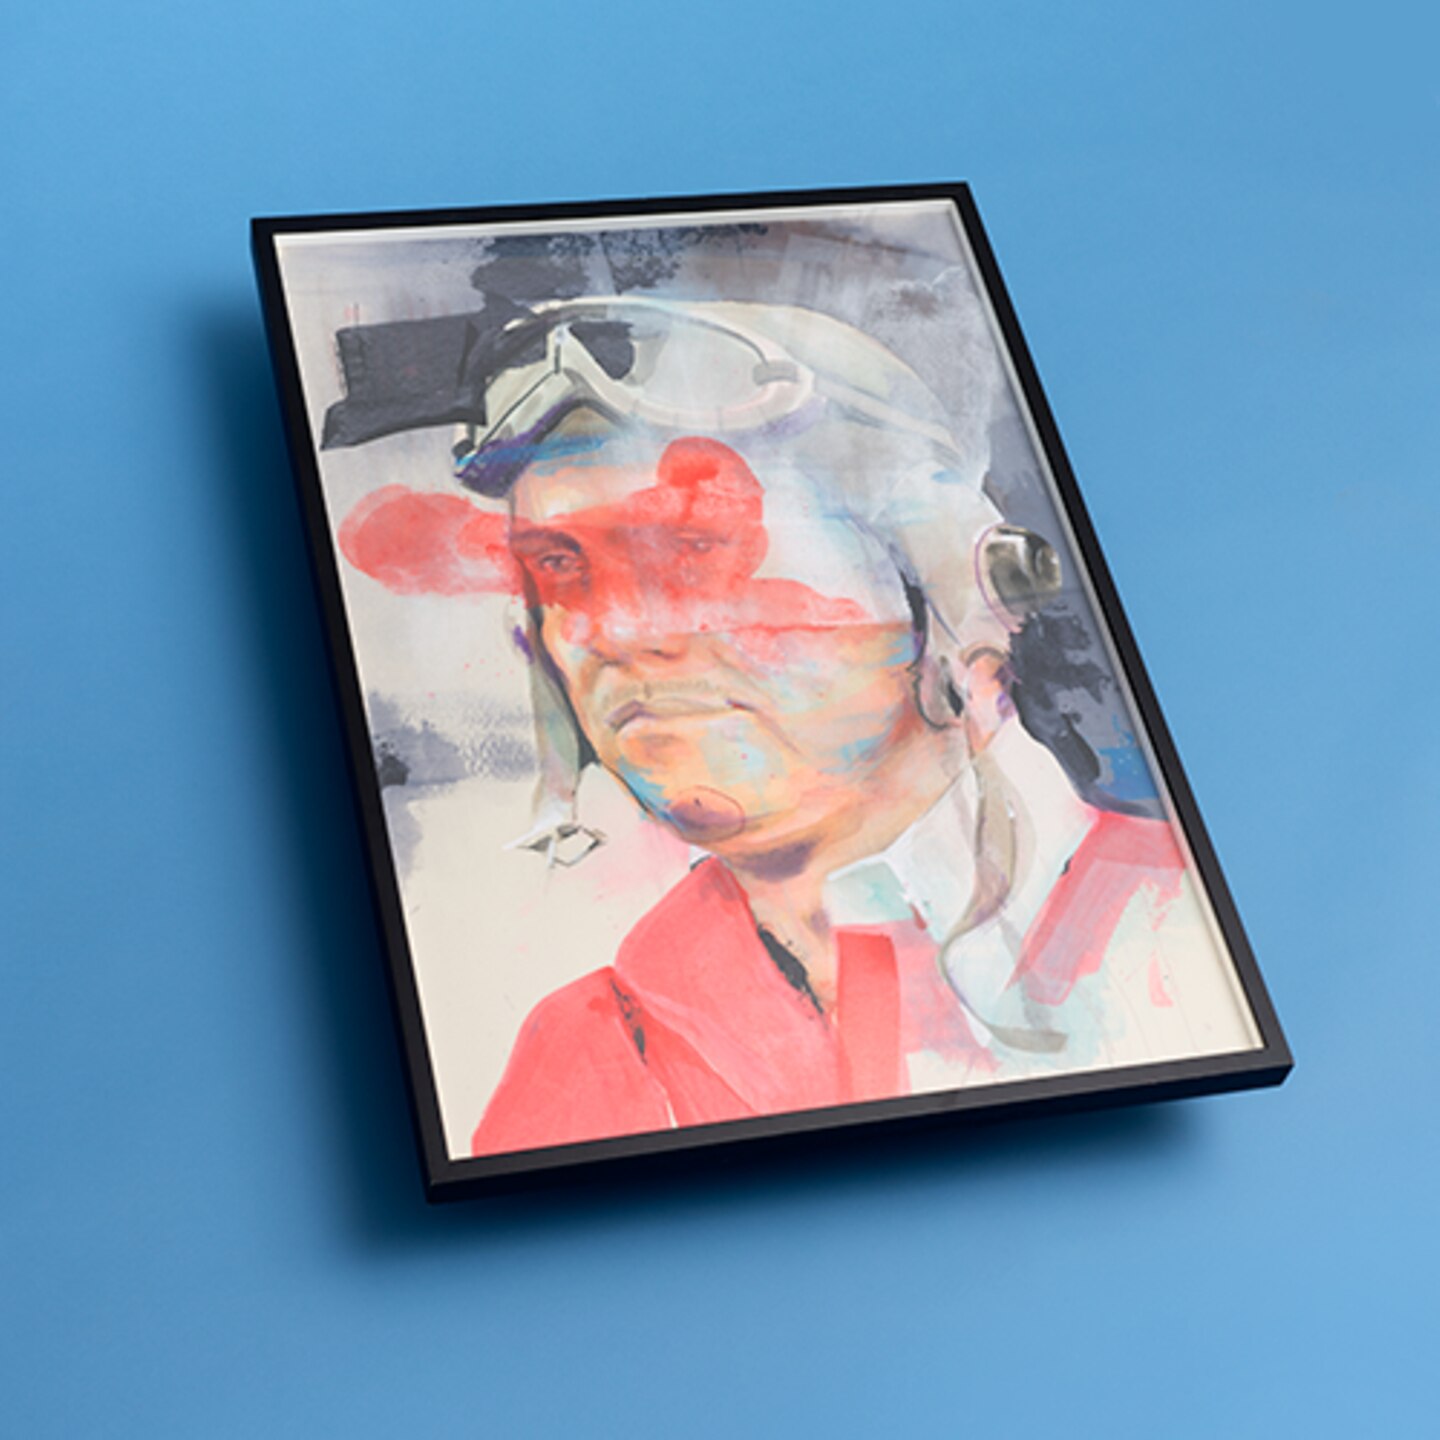 Auktion: SUPERFLY von Timo von Eicken (2014), Gudberg Nerger Gallery. Format: 70 x 100 cm. Material: Acryl und Pastellkreide auf Finnkarton.